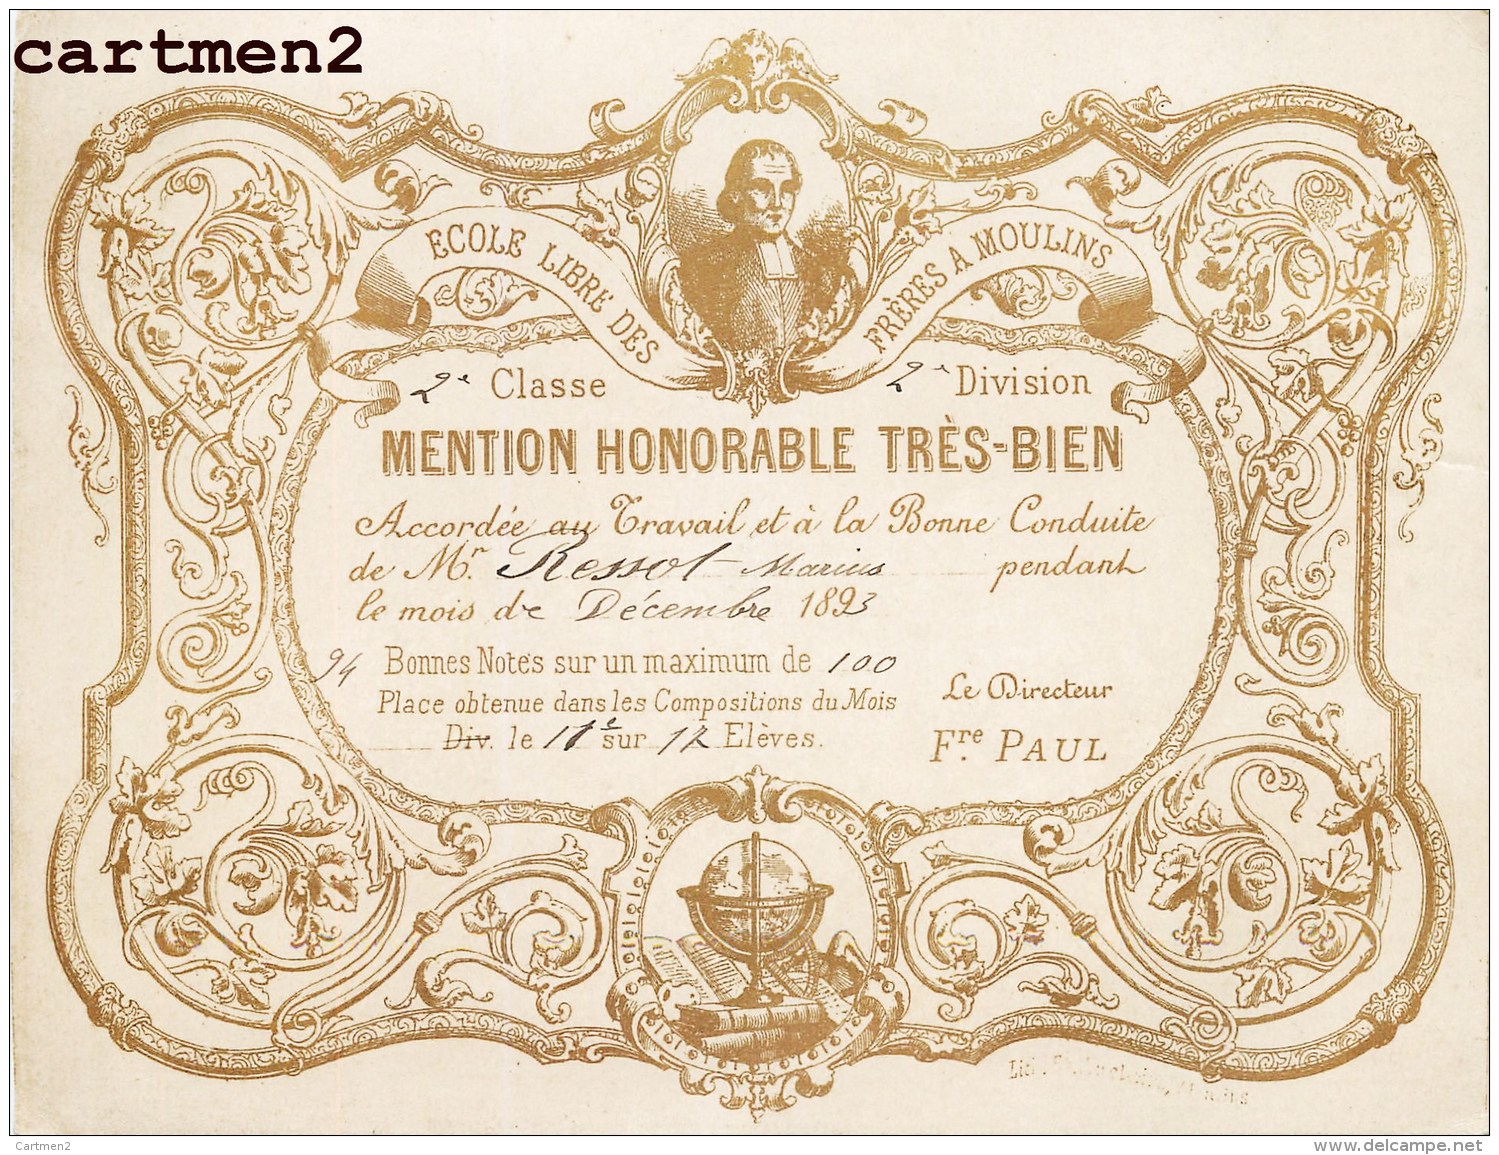 MOULINS ECOLE LIBRE DES FRERES 1893 DIPLOME MENTION TRES BIEN ECOLE 03 ALLIER - Moulins